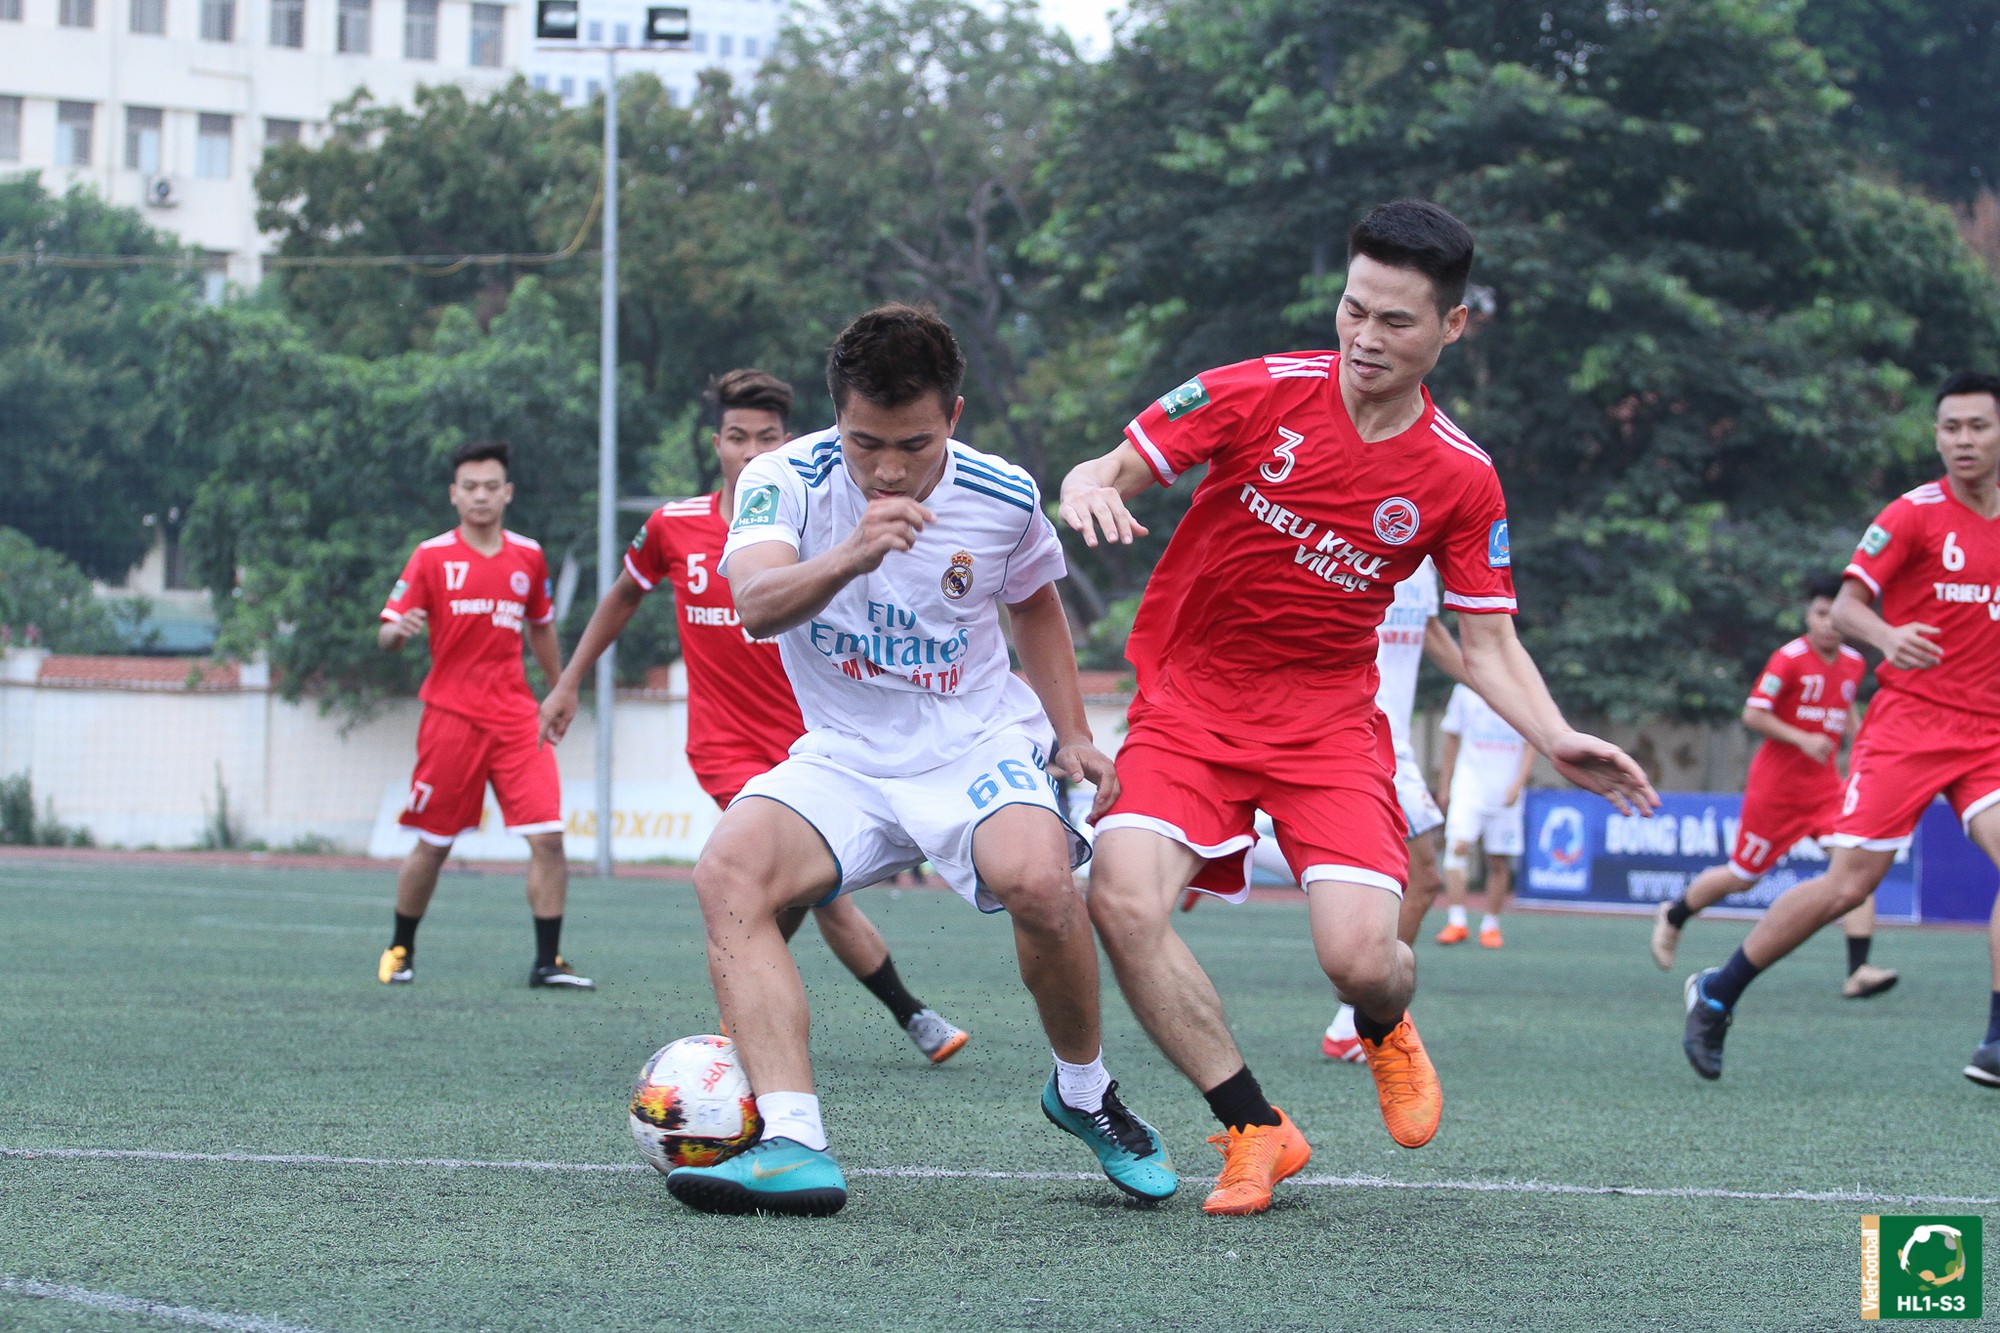 Link trực tiếp Giải hạng Nhất Cúp Vietfootball - HL1-S3 vòng 5 - Ảnh 1.